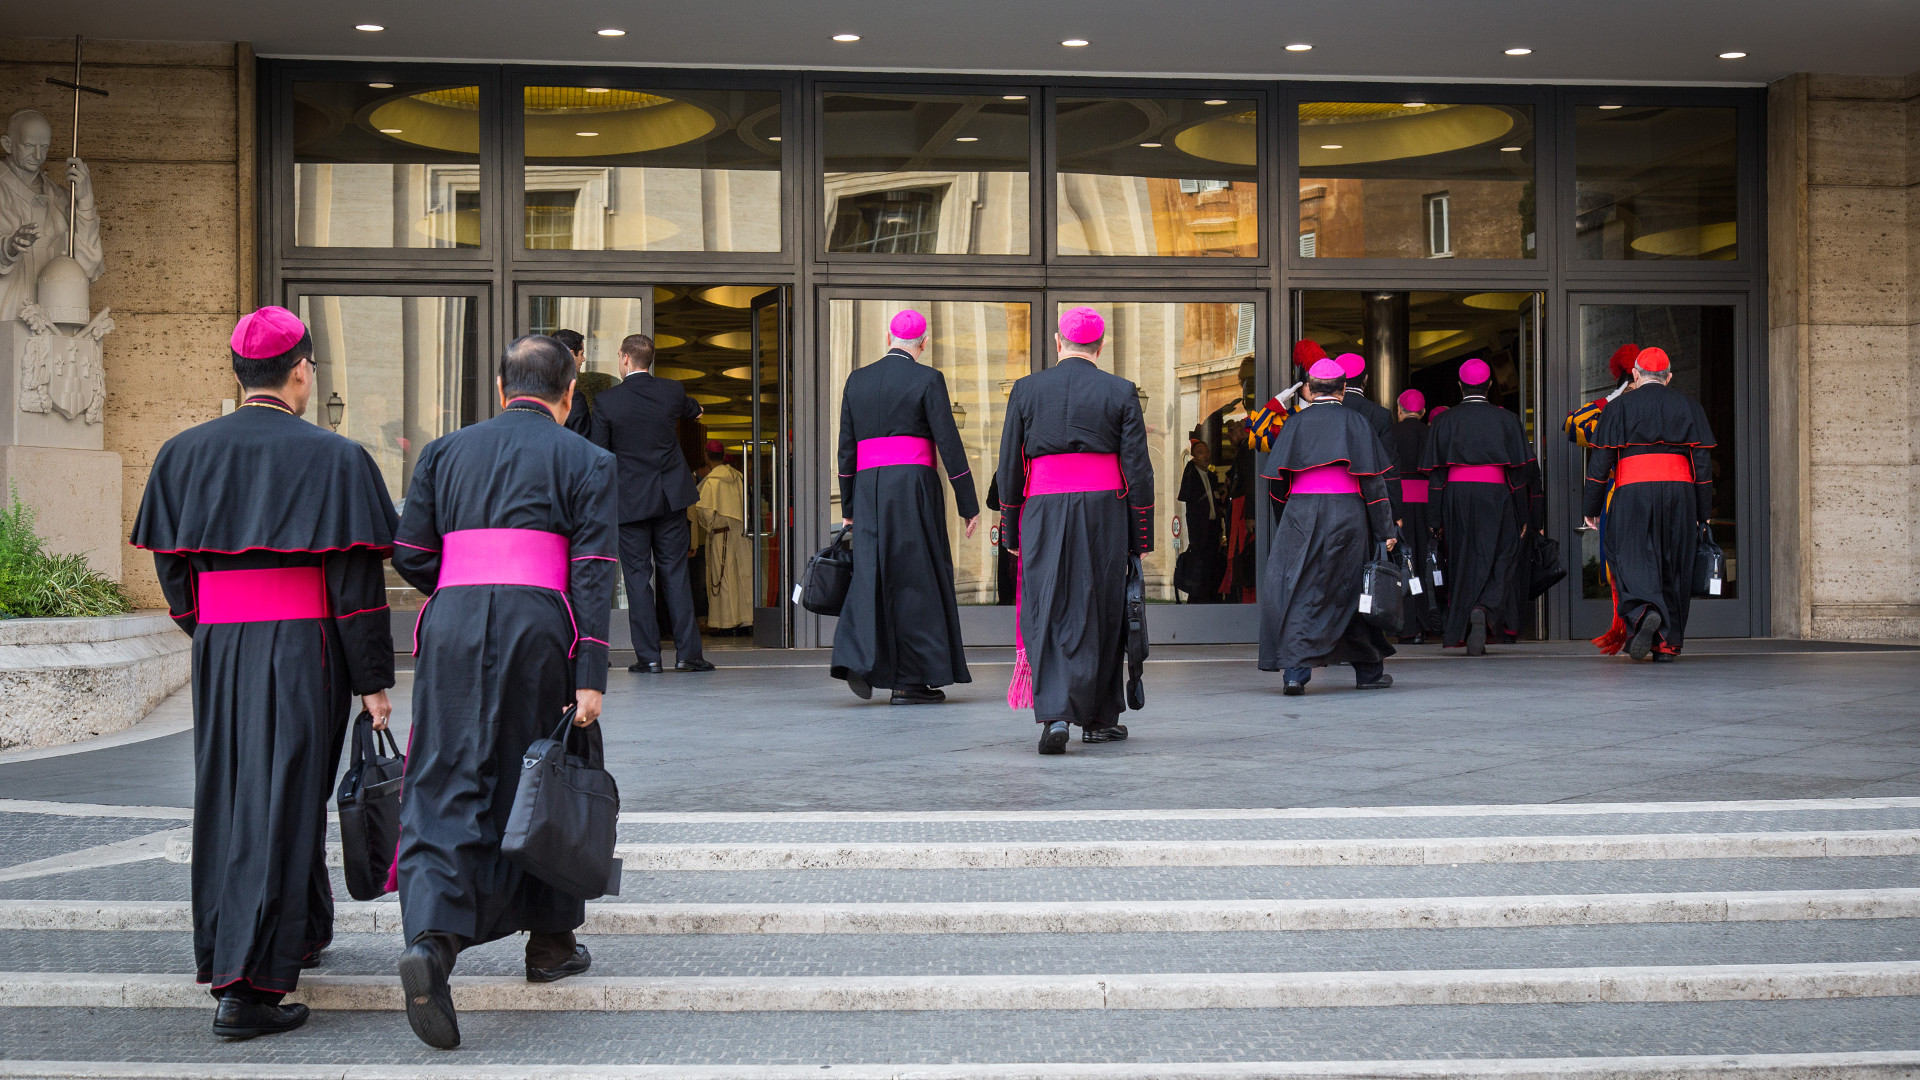 Bischöfe und Kardinäle auf dem Weg zur Synode